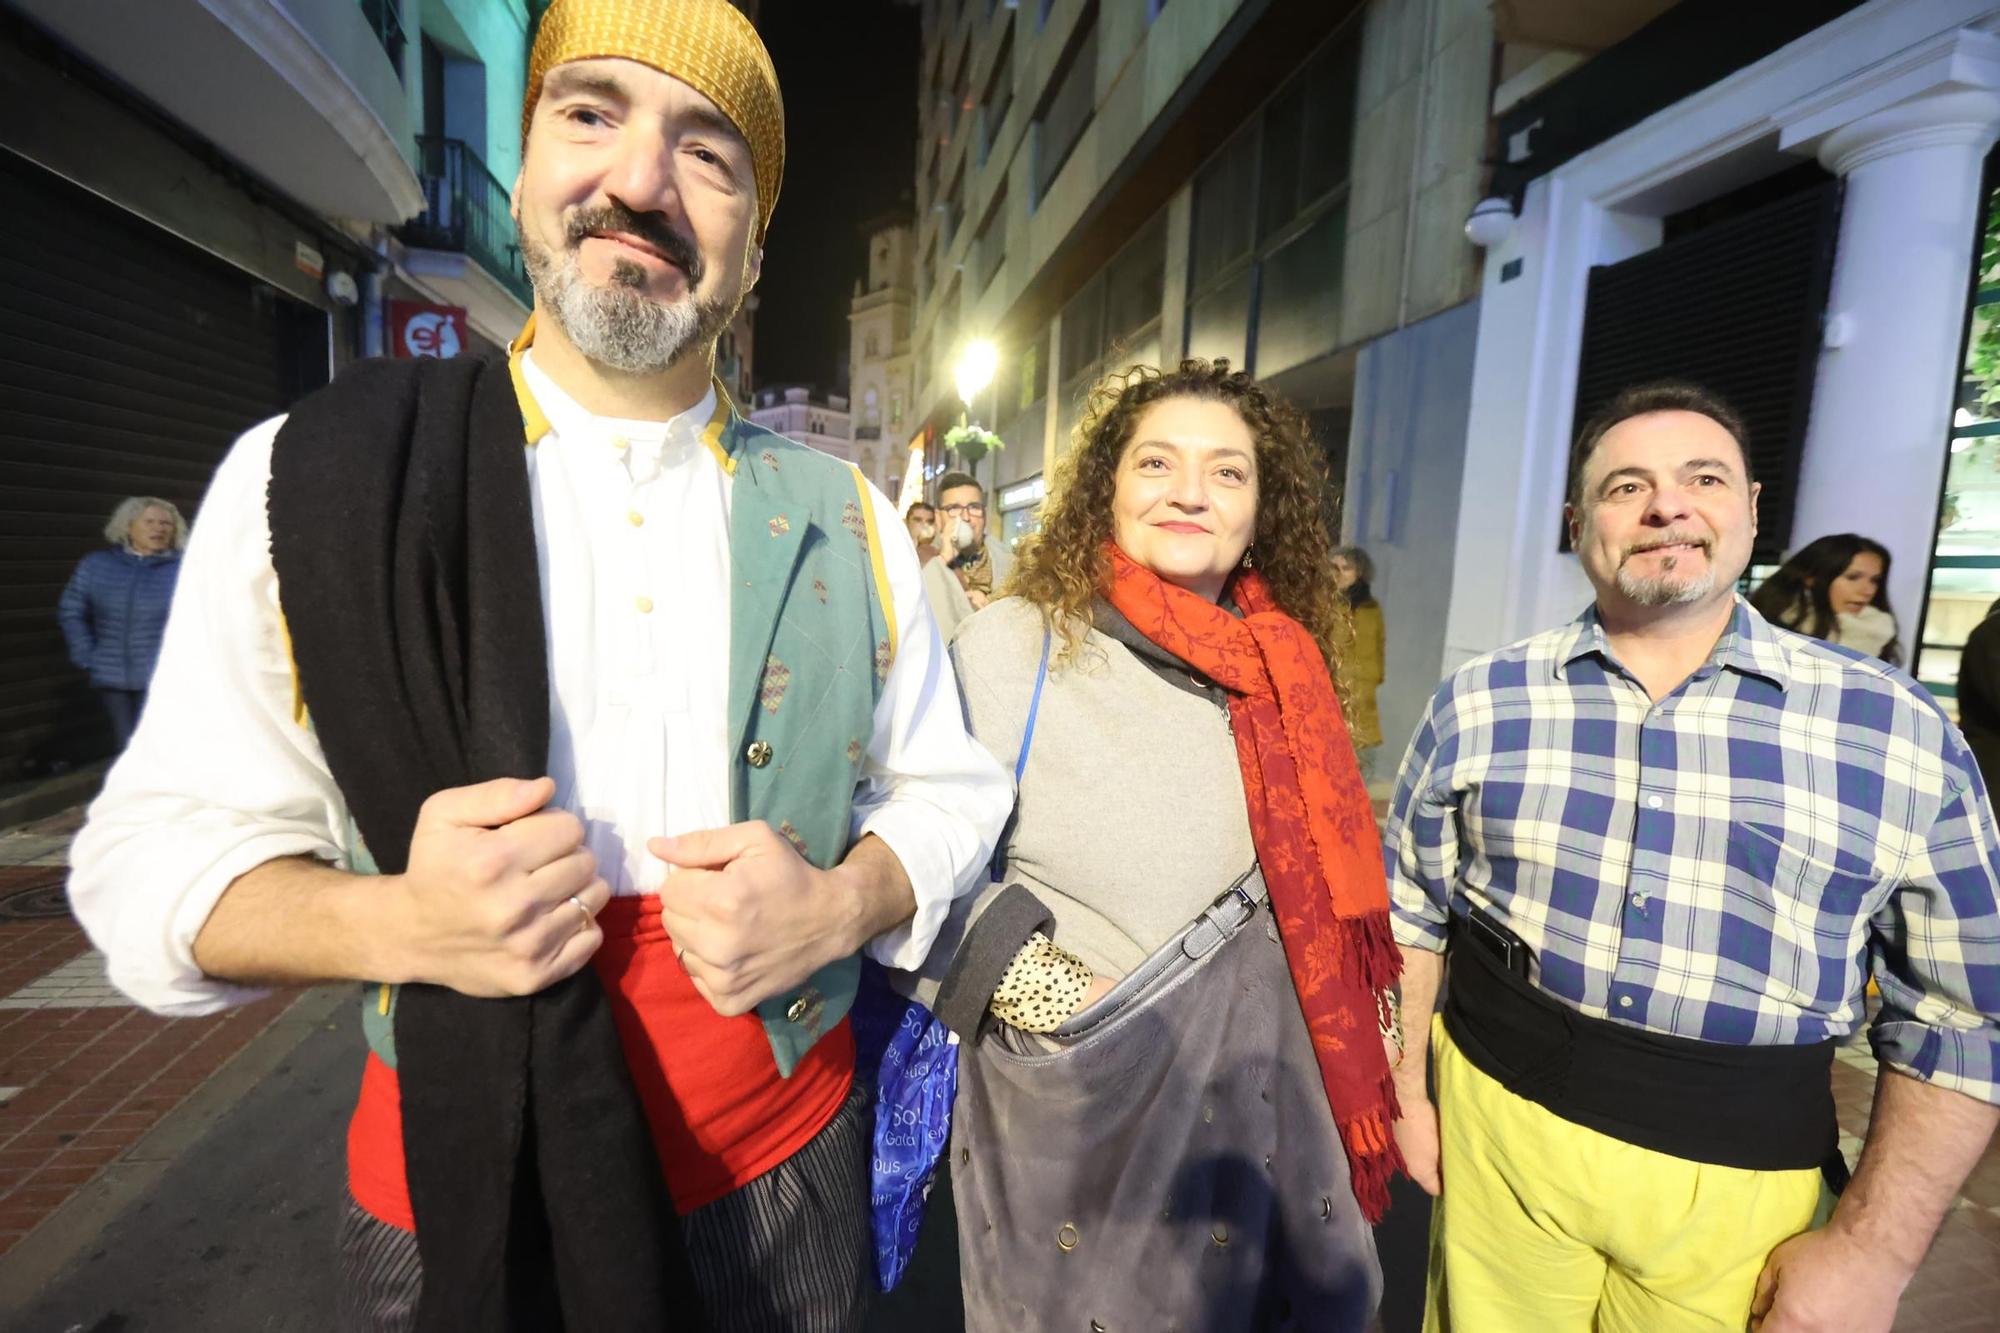 Galería de fotos: Betlem de la Pigà en Castelló, la representación pairal de la Navidad